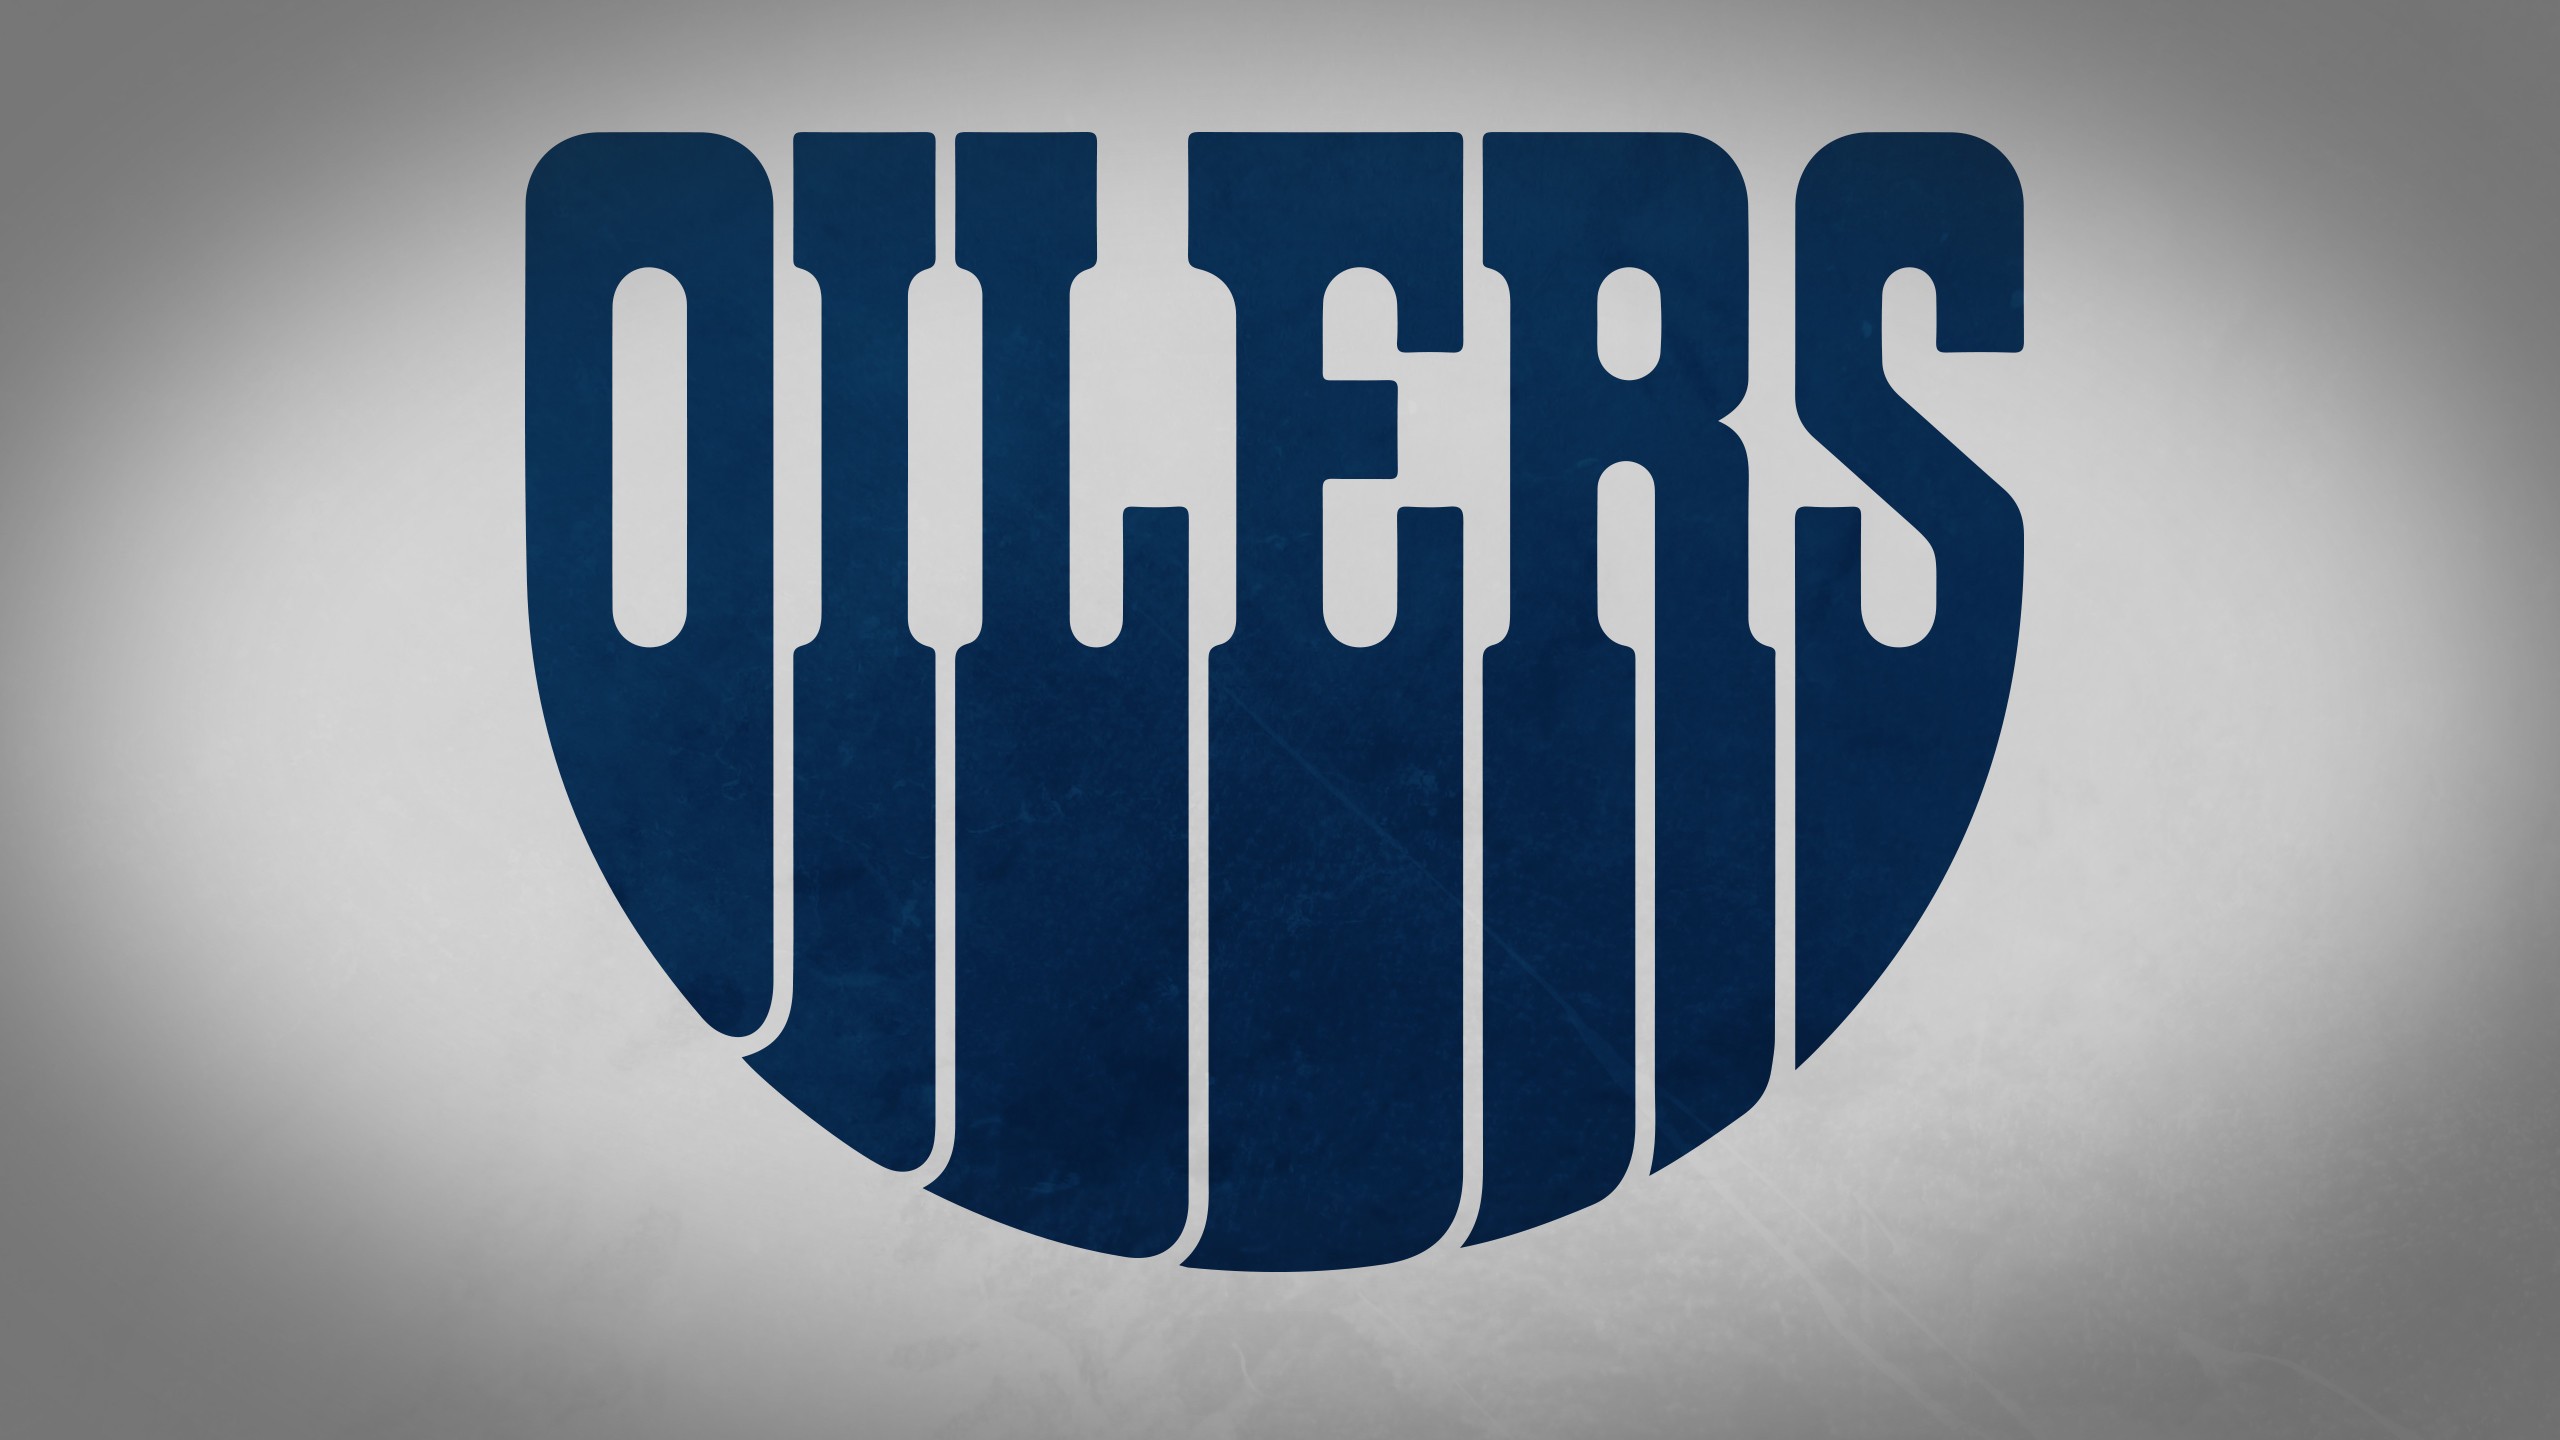 Oilers  Nhl wallpaper, Oilers, Team wallpaper